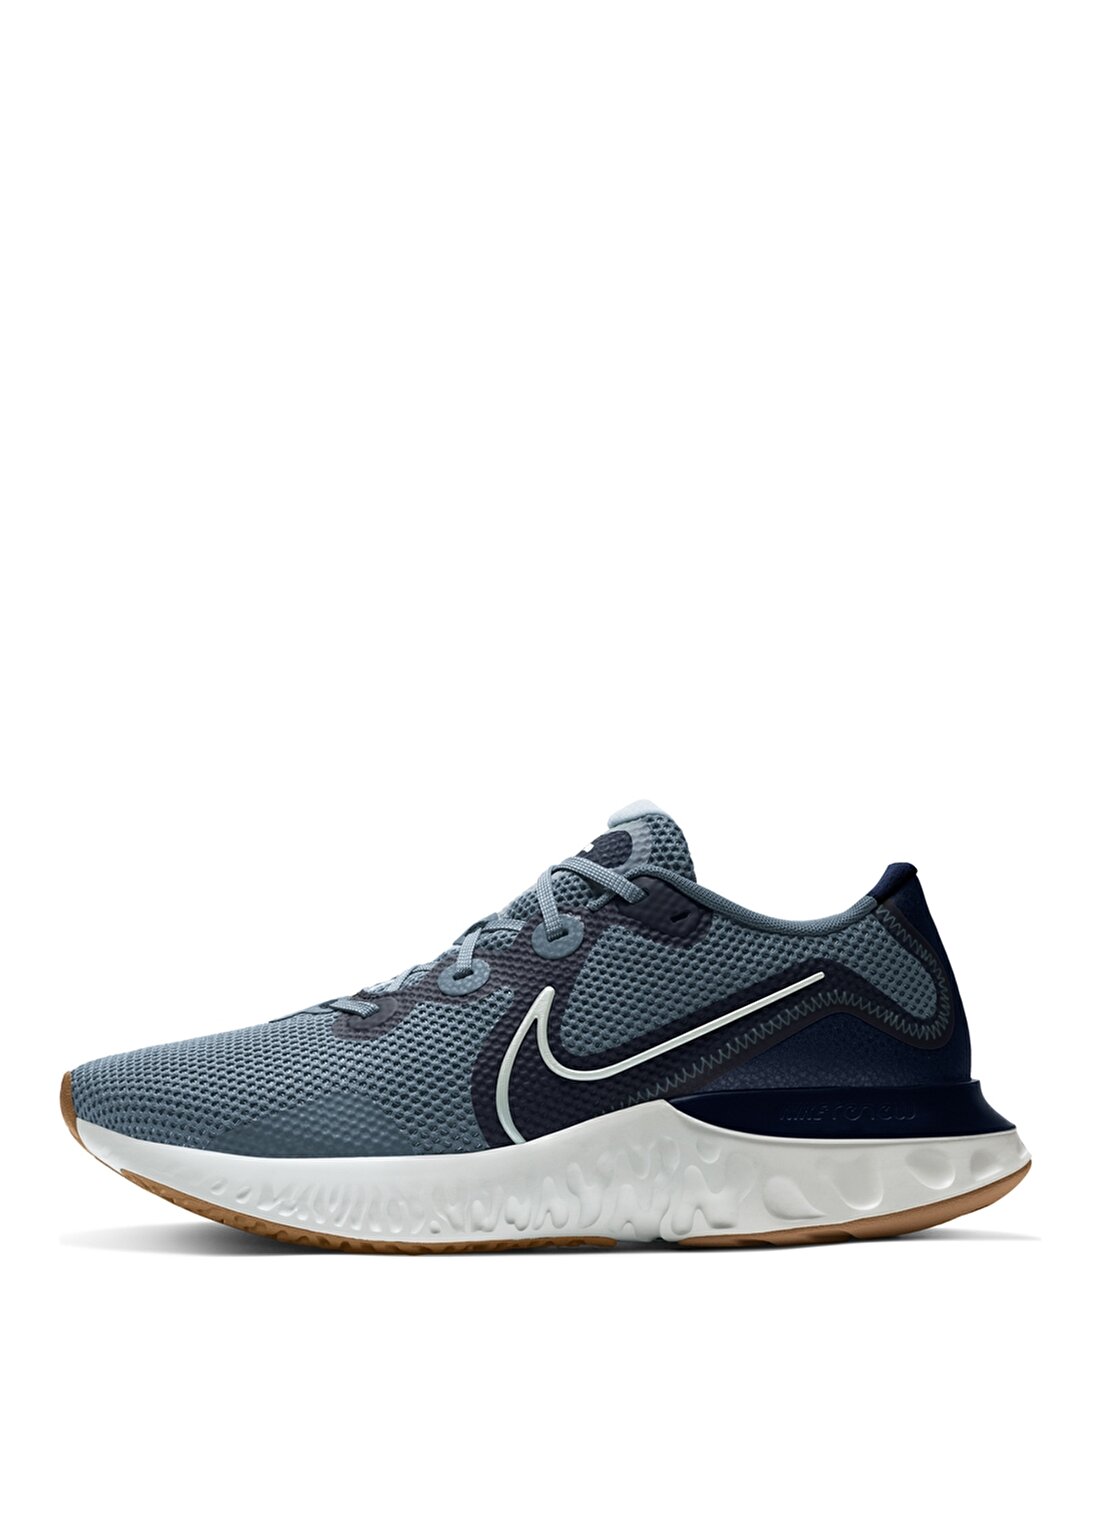 Nike CK6357-008 Renew Run Erkek Mavi Koşu Ayakkabısı